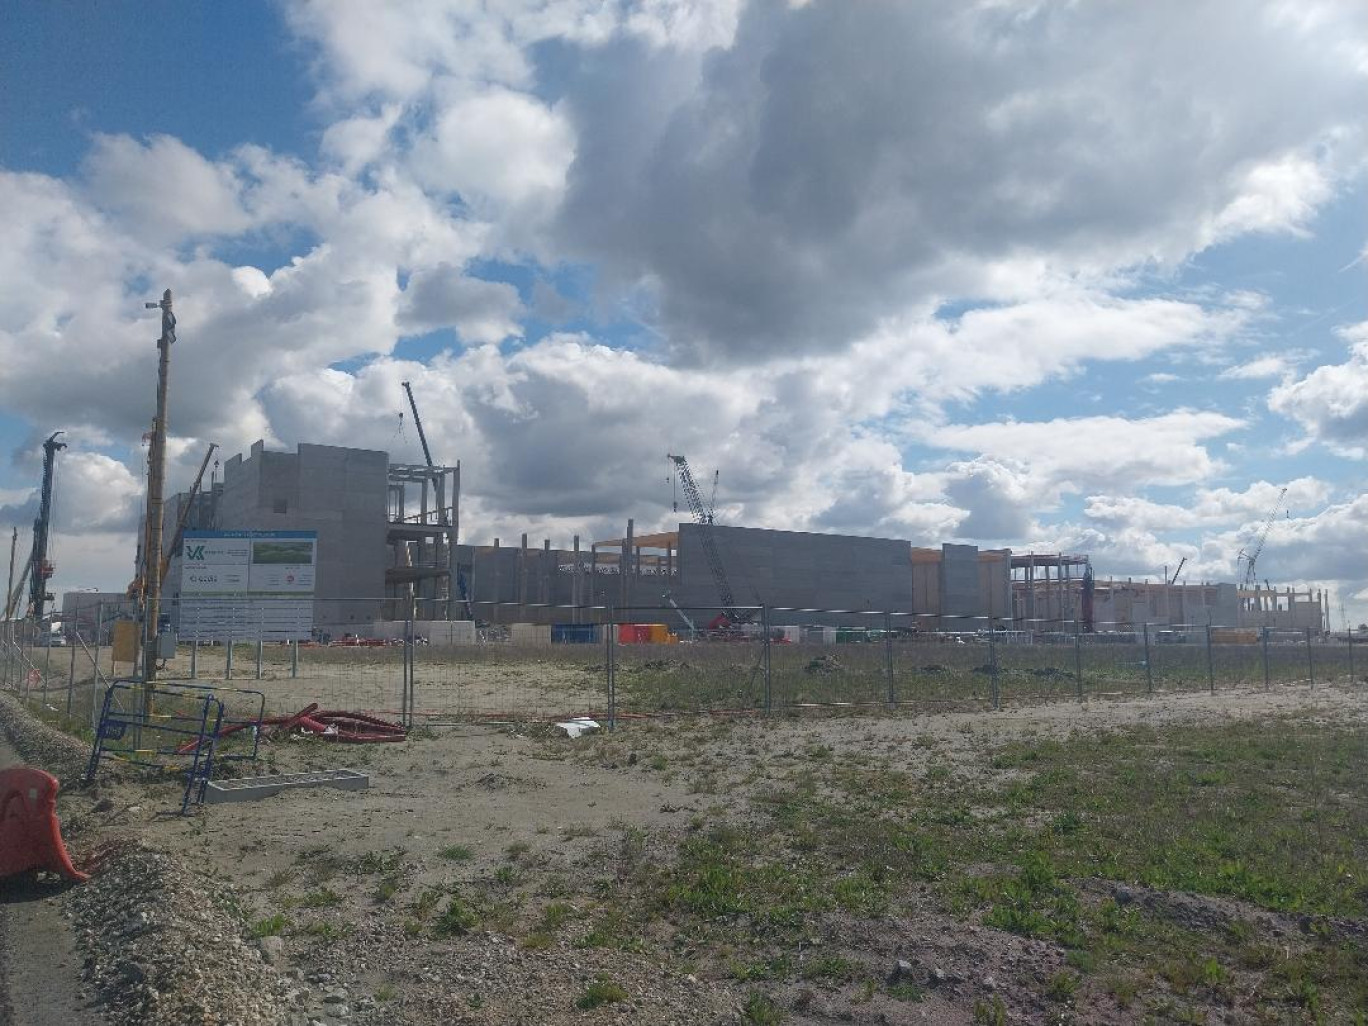 En quelques mois seulement, la future usine géante de Verkor est déjà bien visible sur la zone "Grandes Industries" du port de Dunkerque à Bourbourg.